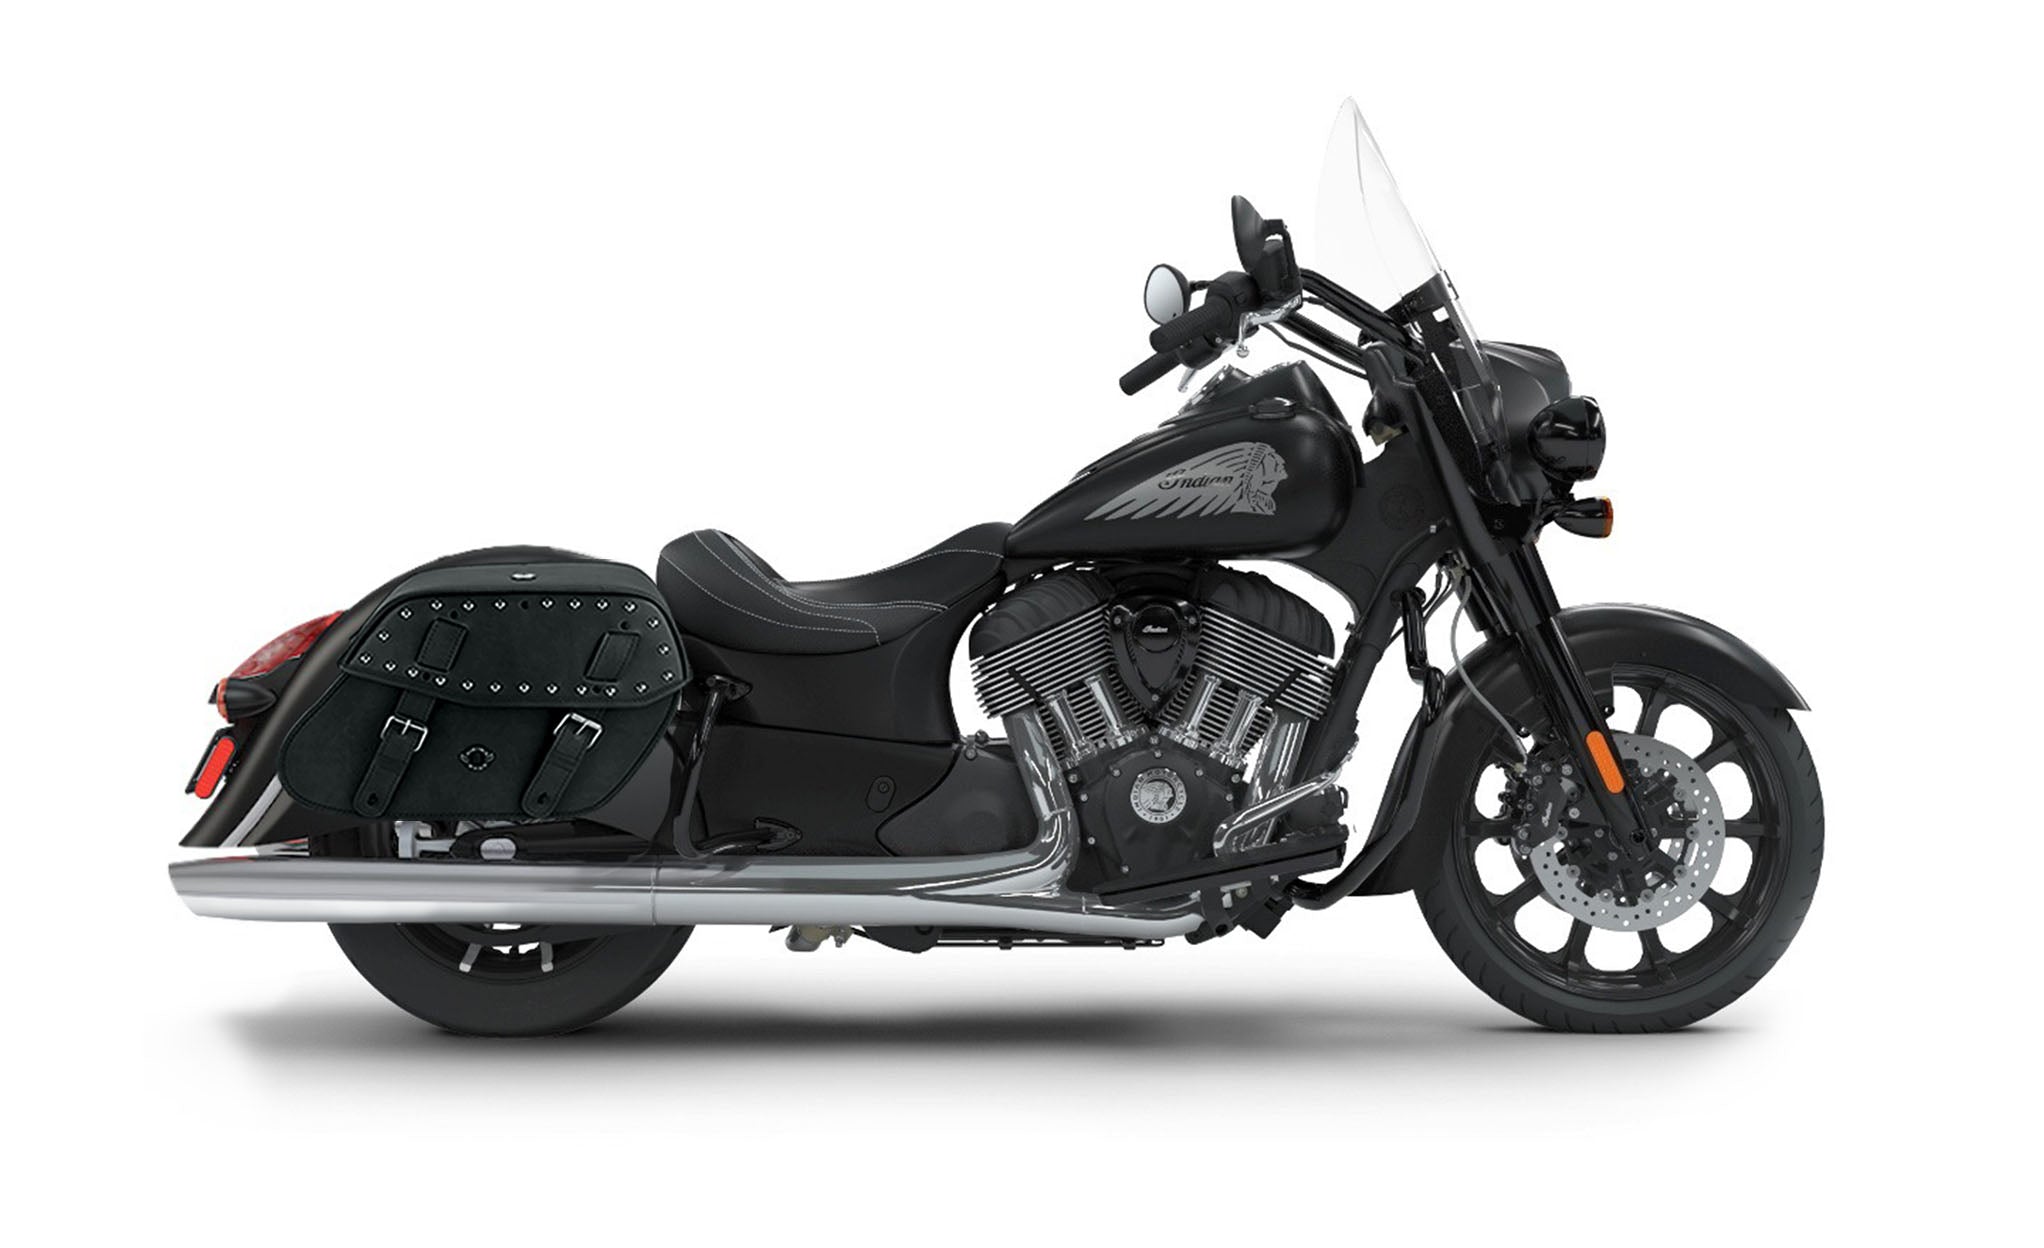 Viking Odin Large Indian Springfield Darkhorse Studded Leather Motorcycle Saddlebags on Bike Photo @expand